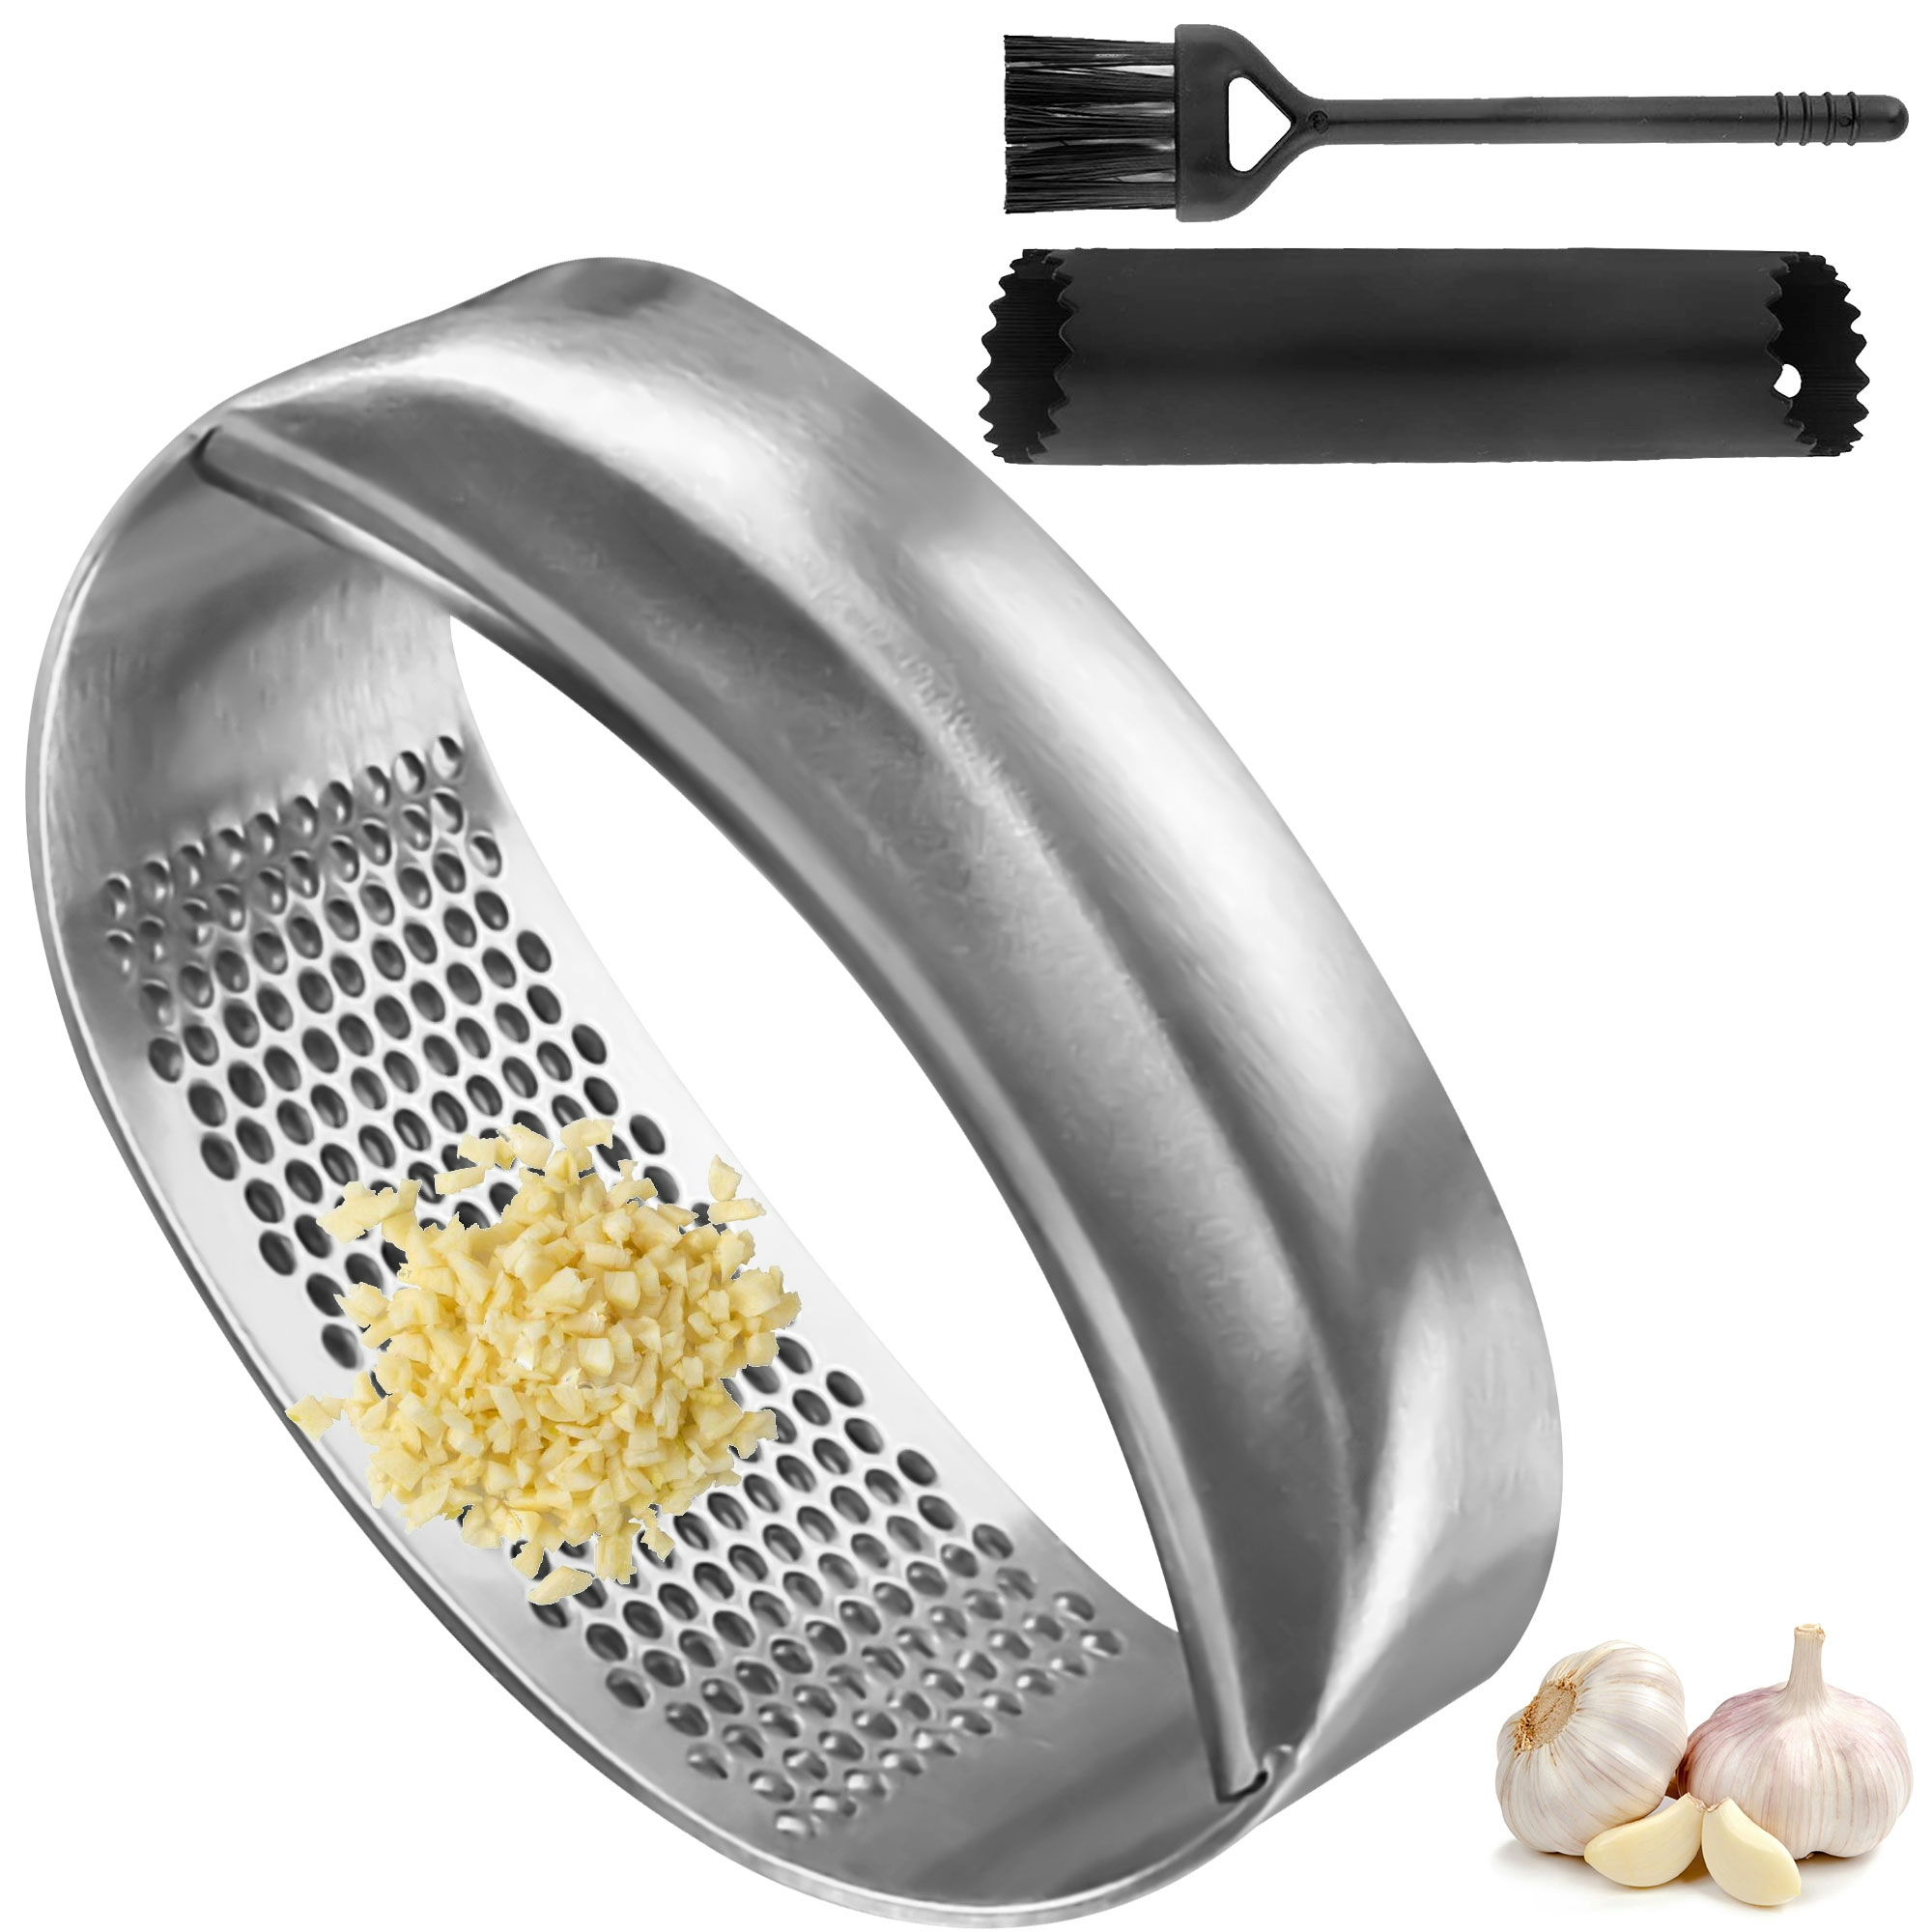 Garlic Press Stainless Steel Garlic Crusher Presser Kitchen Garlic Rocker  Food Grade Ginger Grater Chopper